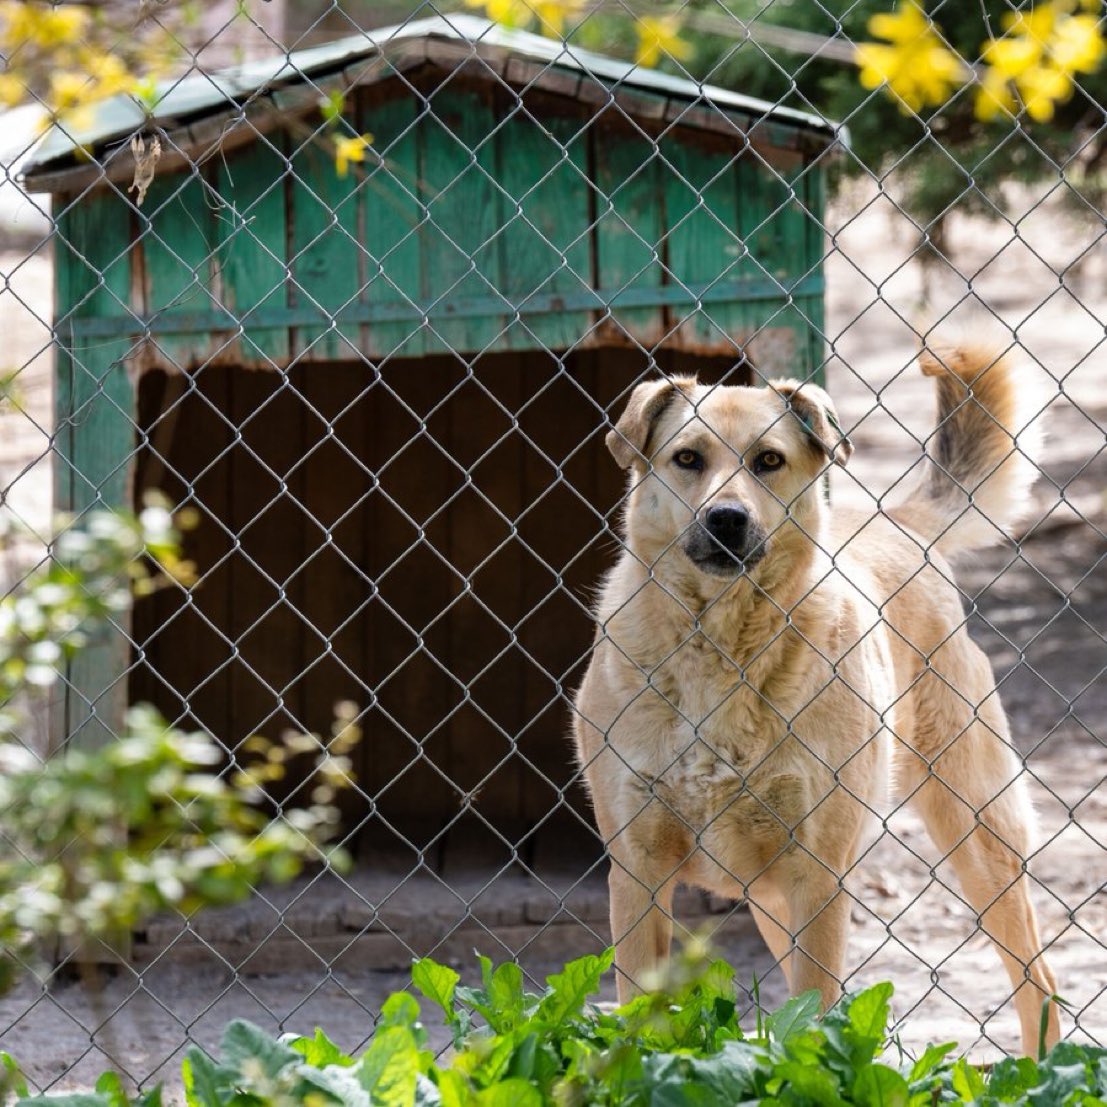 Ankara'nın Gölbaşı ilçesinde müstakil evinin bahçesinde 180 köpeğe bakan Gökçen Yıldız'a köpeklerin gürültü yaptığı gerekçesiyle 1 milyon 731 bin lira para cezası kesildi.